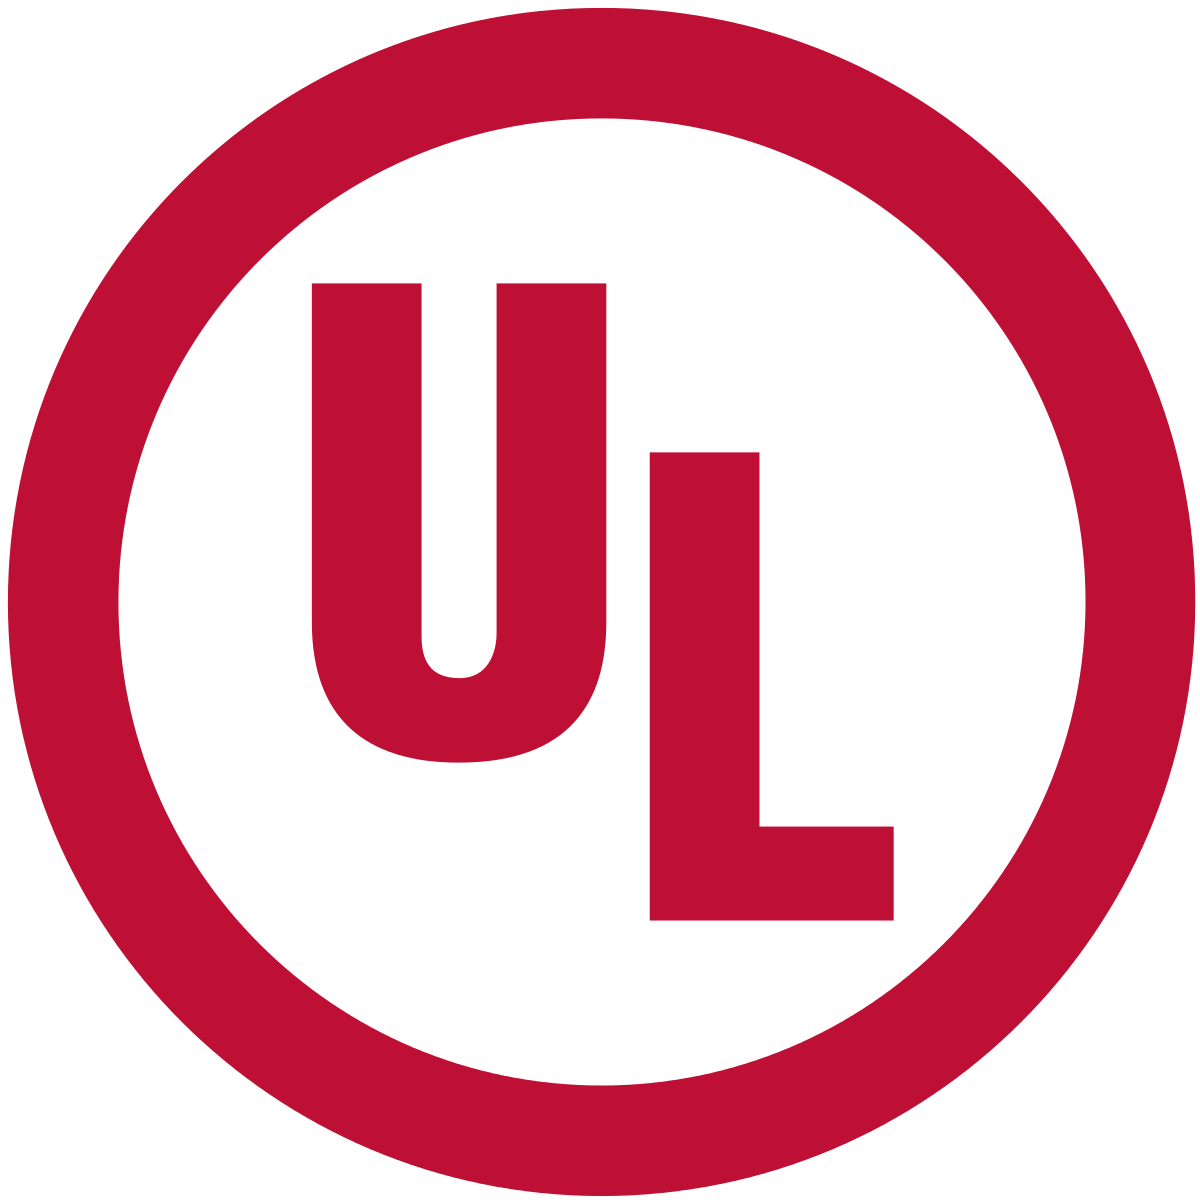 UL Logo - UL (safety organization)